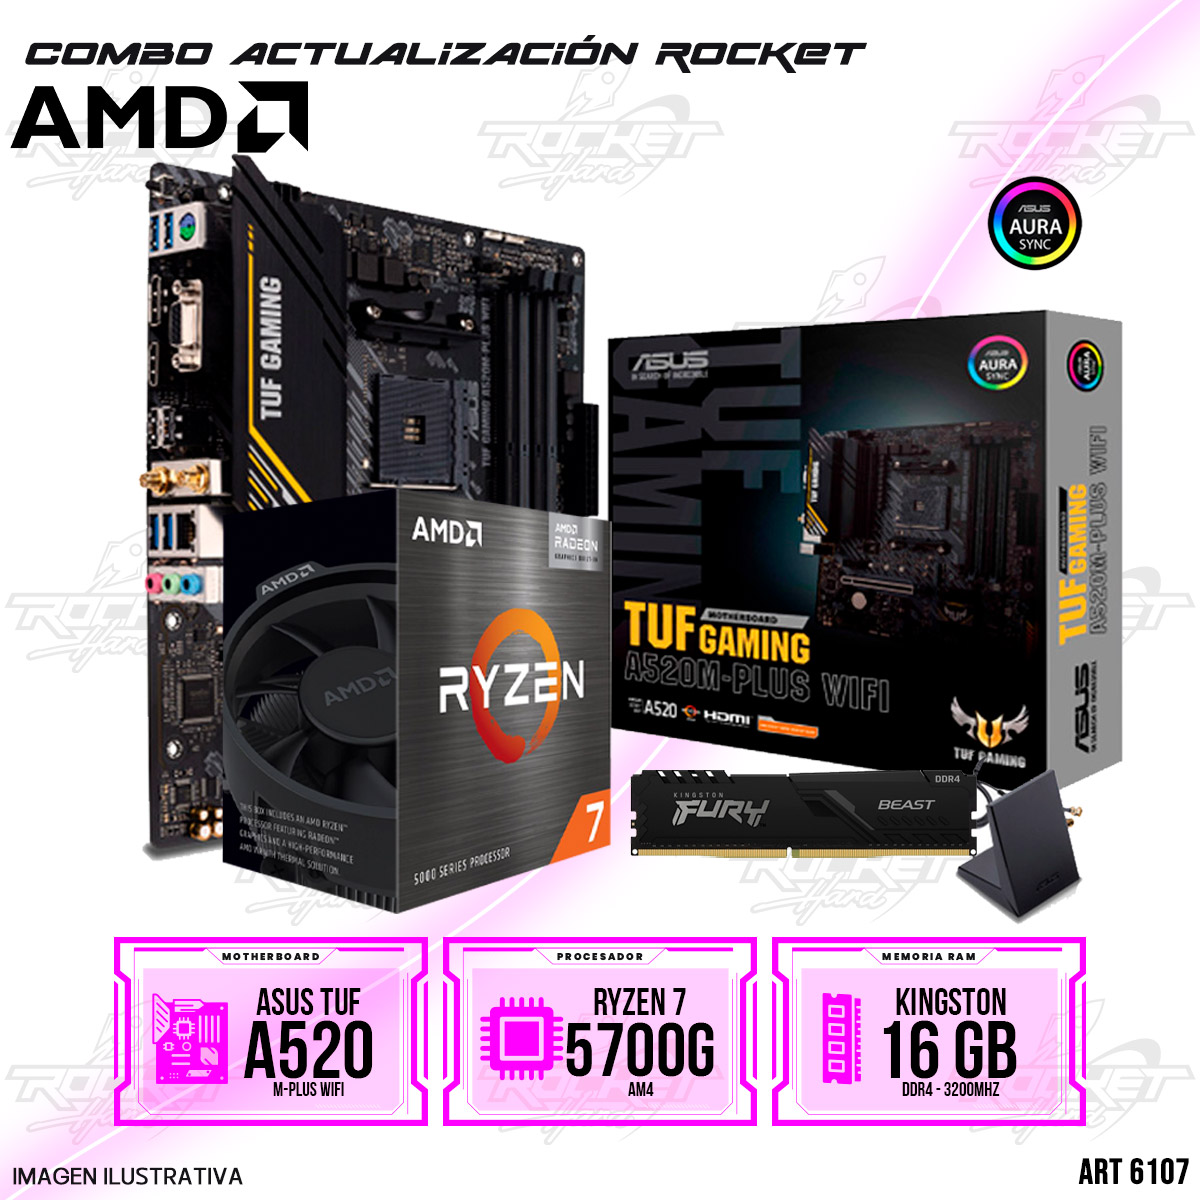 COMBO ROCKET AMD RYZEN 7 5700G - A520 WIFI - 16GB RAM